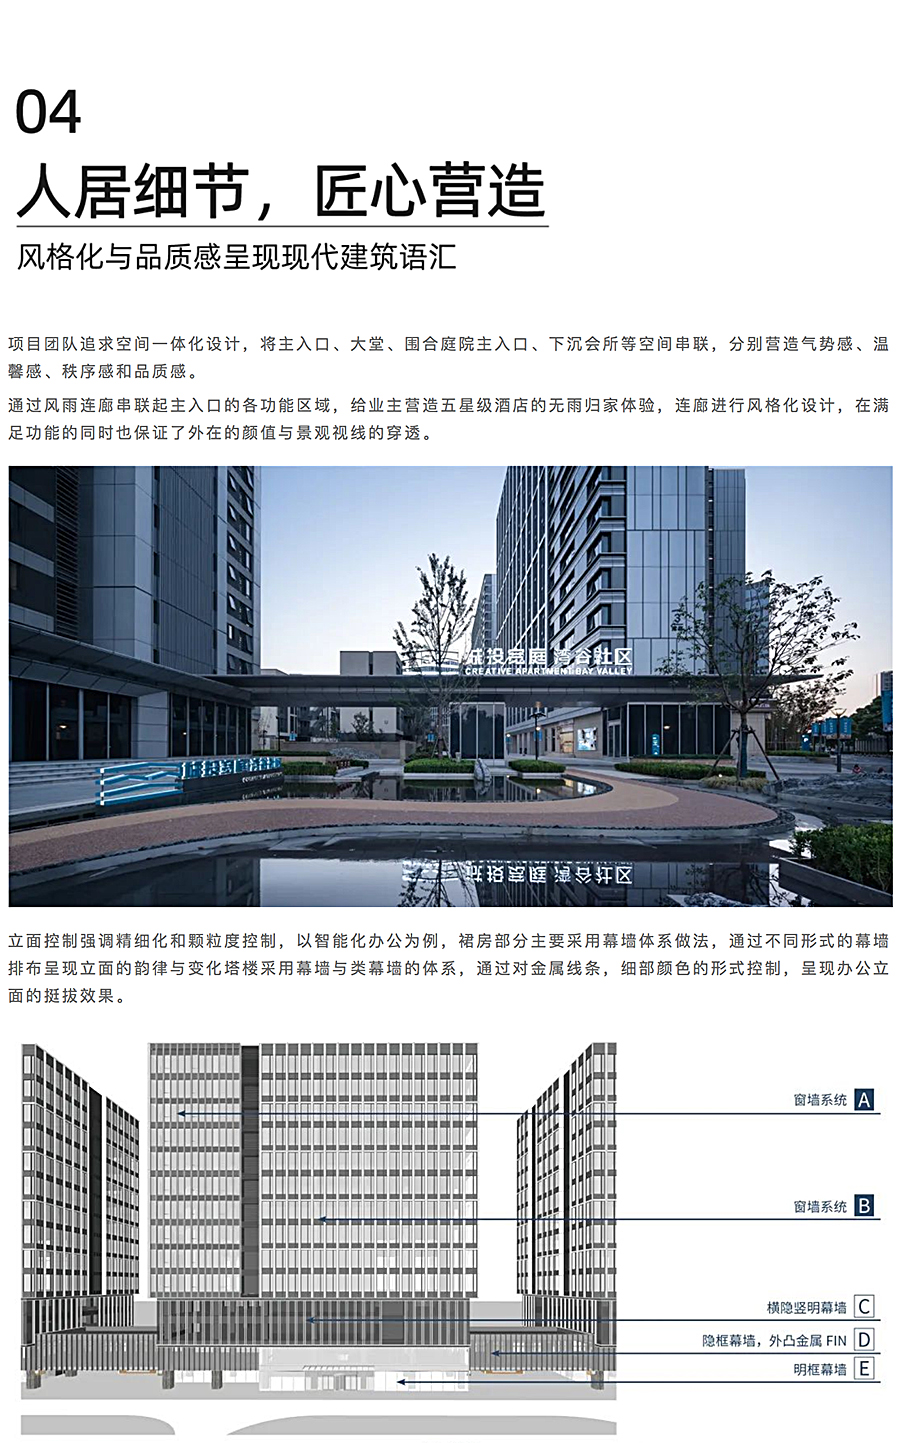 上海城投湾谷科技园二期_0008_图层-9.jpg